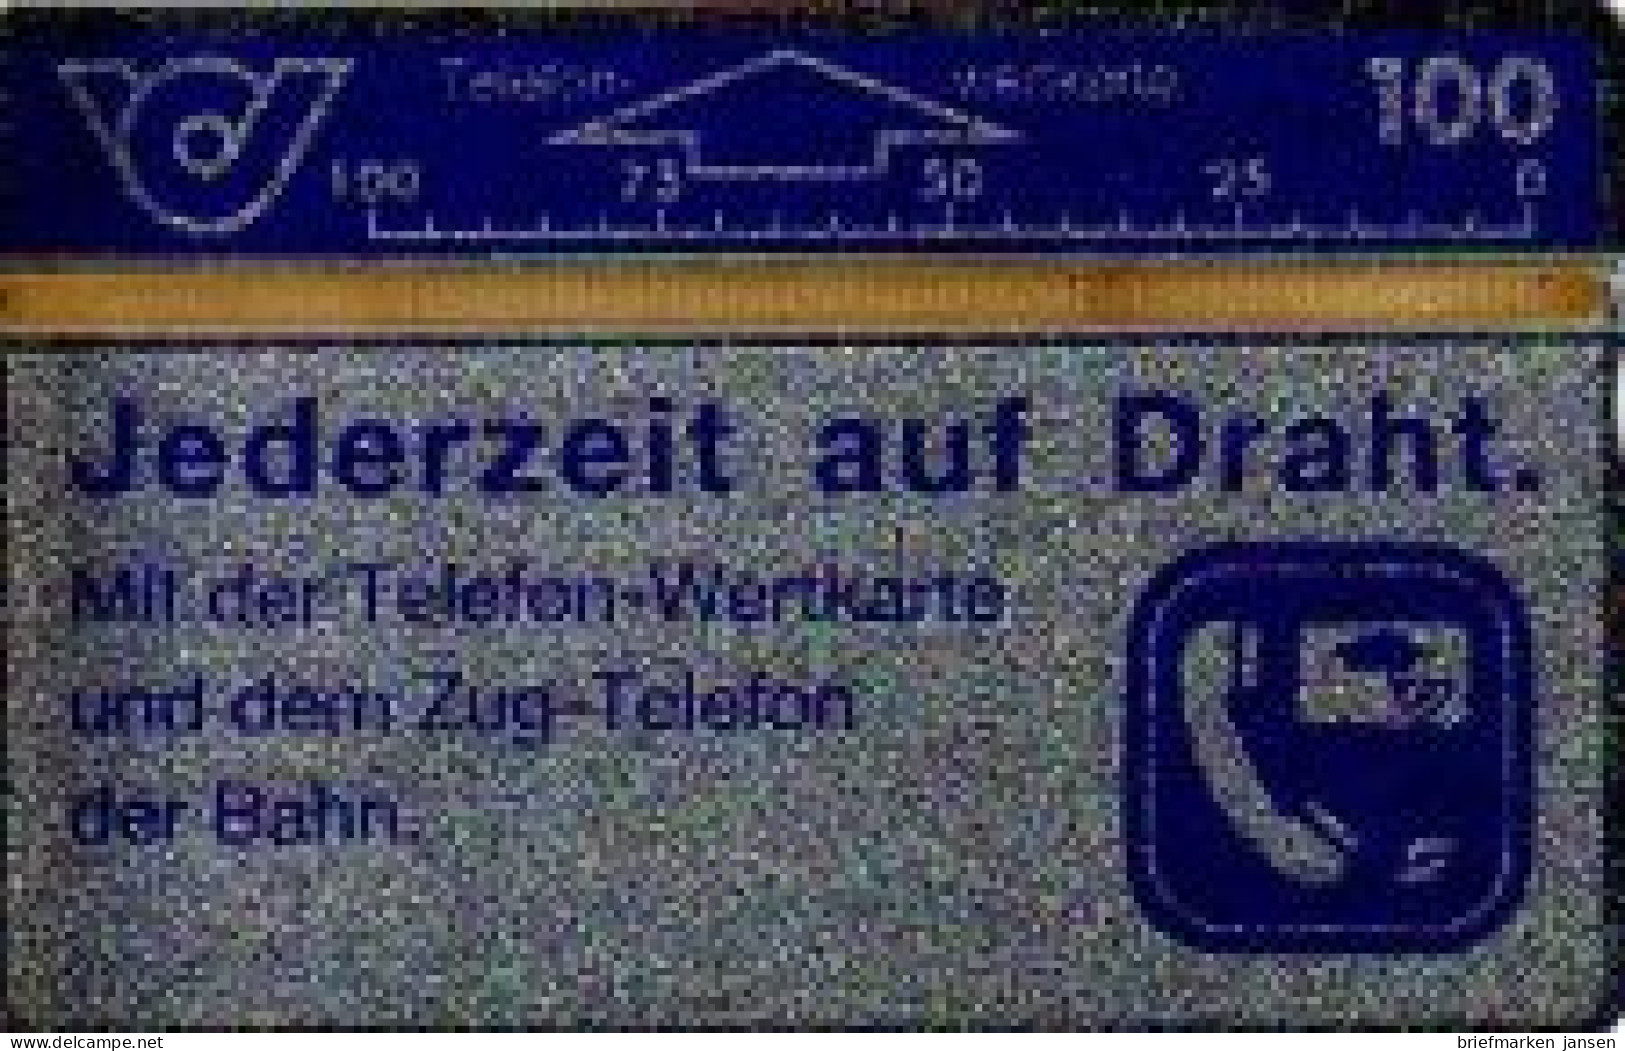 Telefonkarte Österreich, Jederzeit Auf Draht, Zug-Telefon, 100 - Ohne Zuordnung